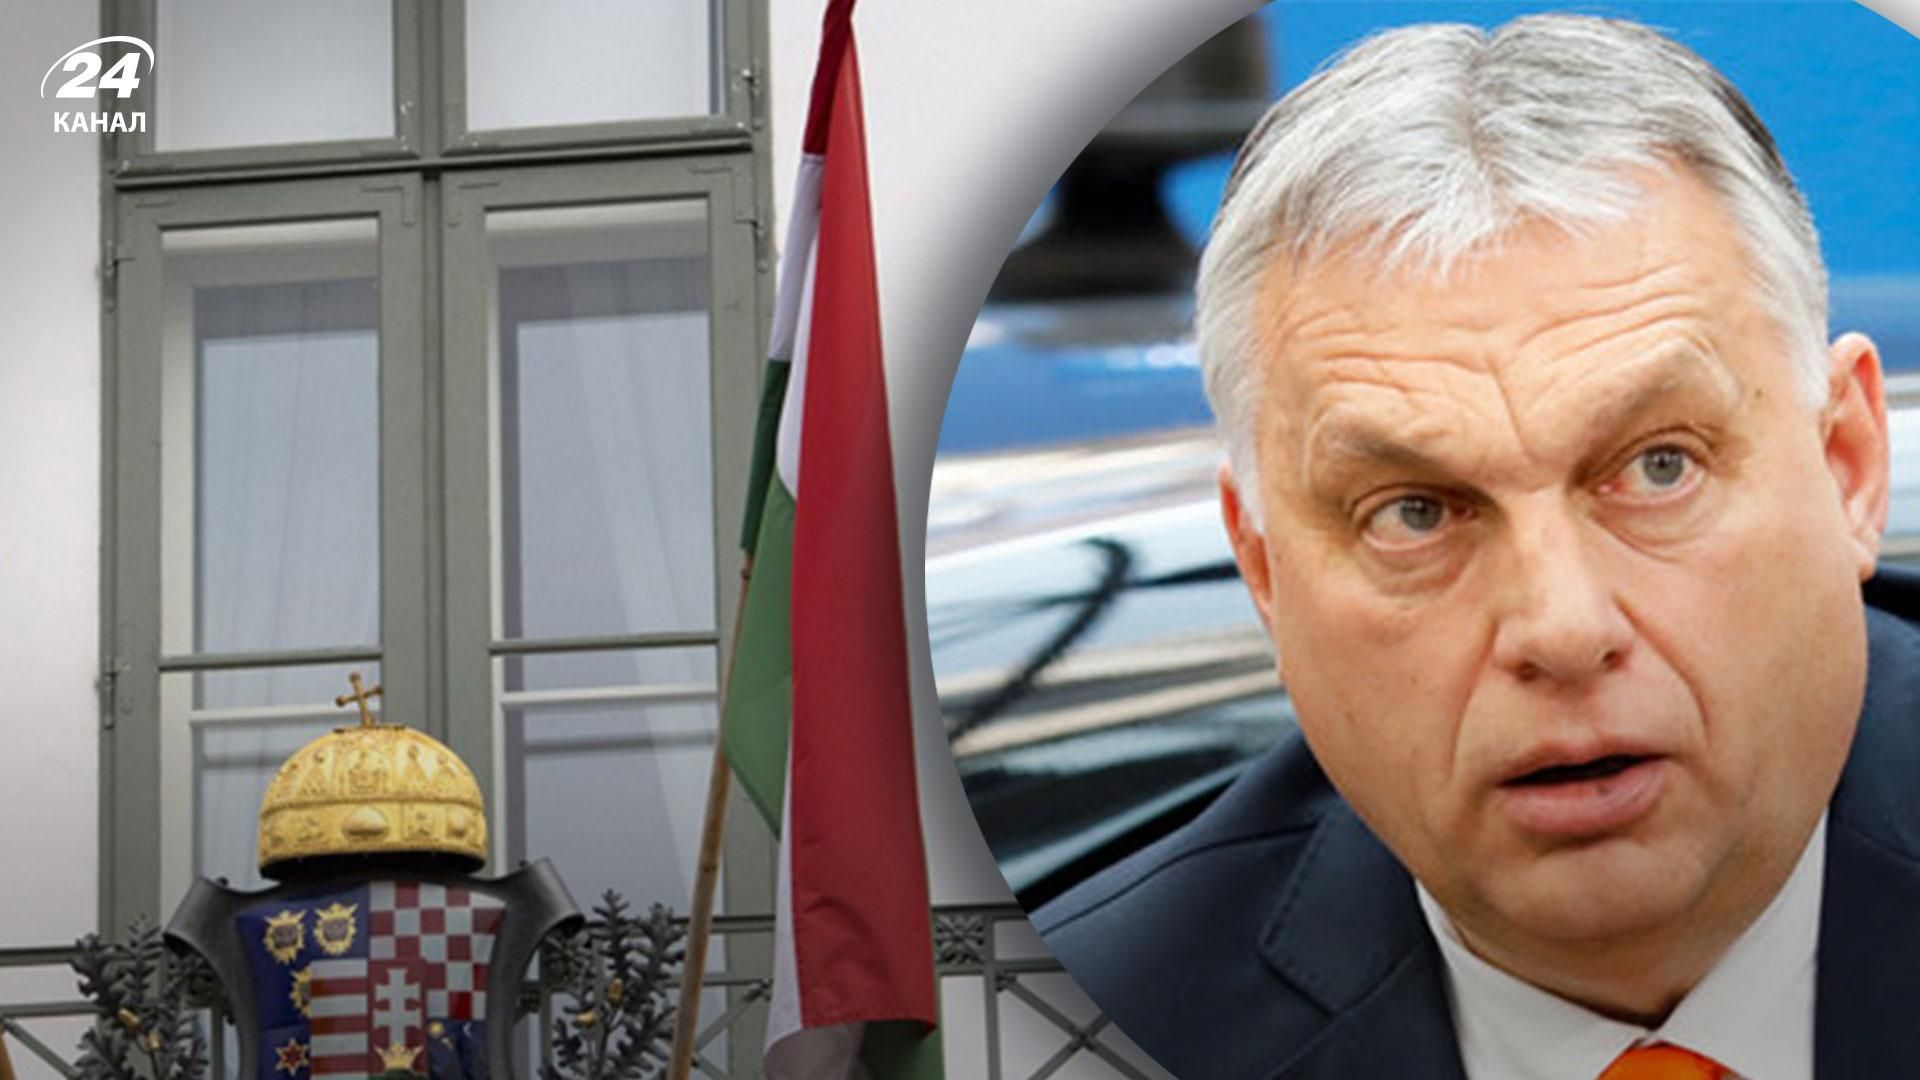 "Щоб пом'якшити наслідки": у посольстві Угорщини пояснили введення у країні надзвичайного стану